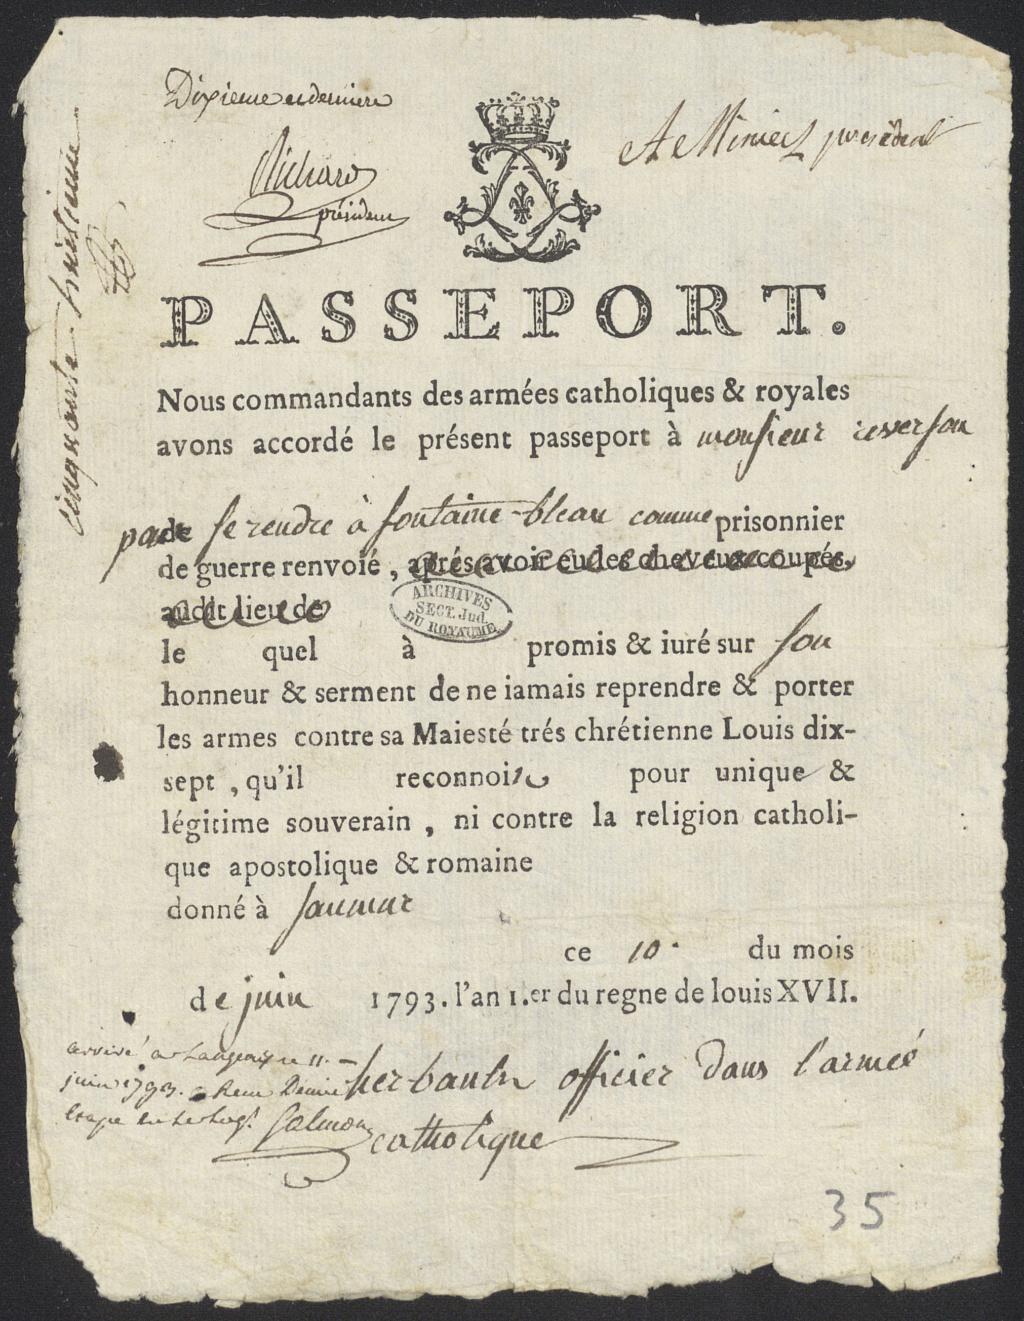 Passeport pour prisonnier de guerre - improbable Passep10